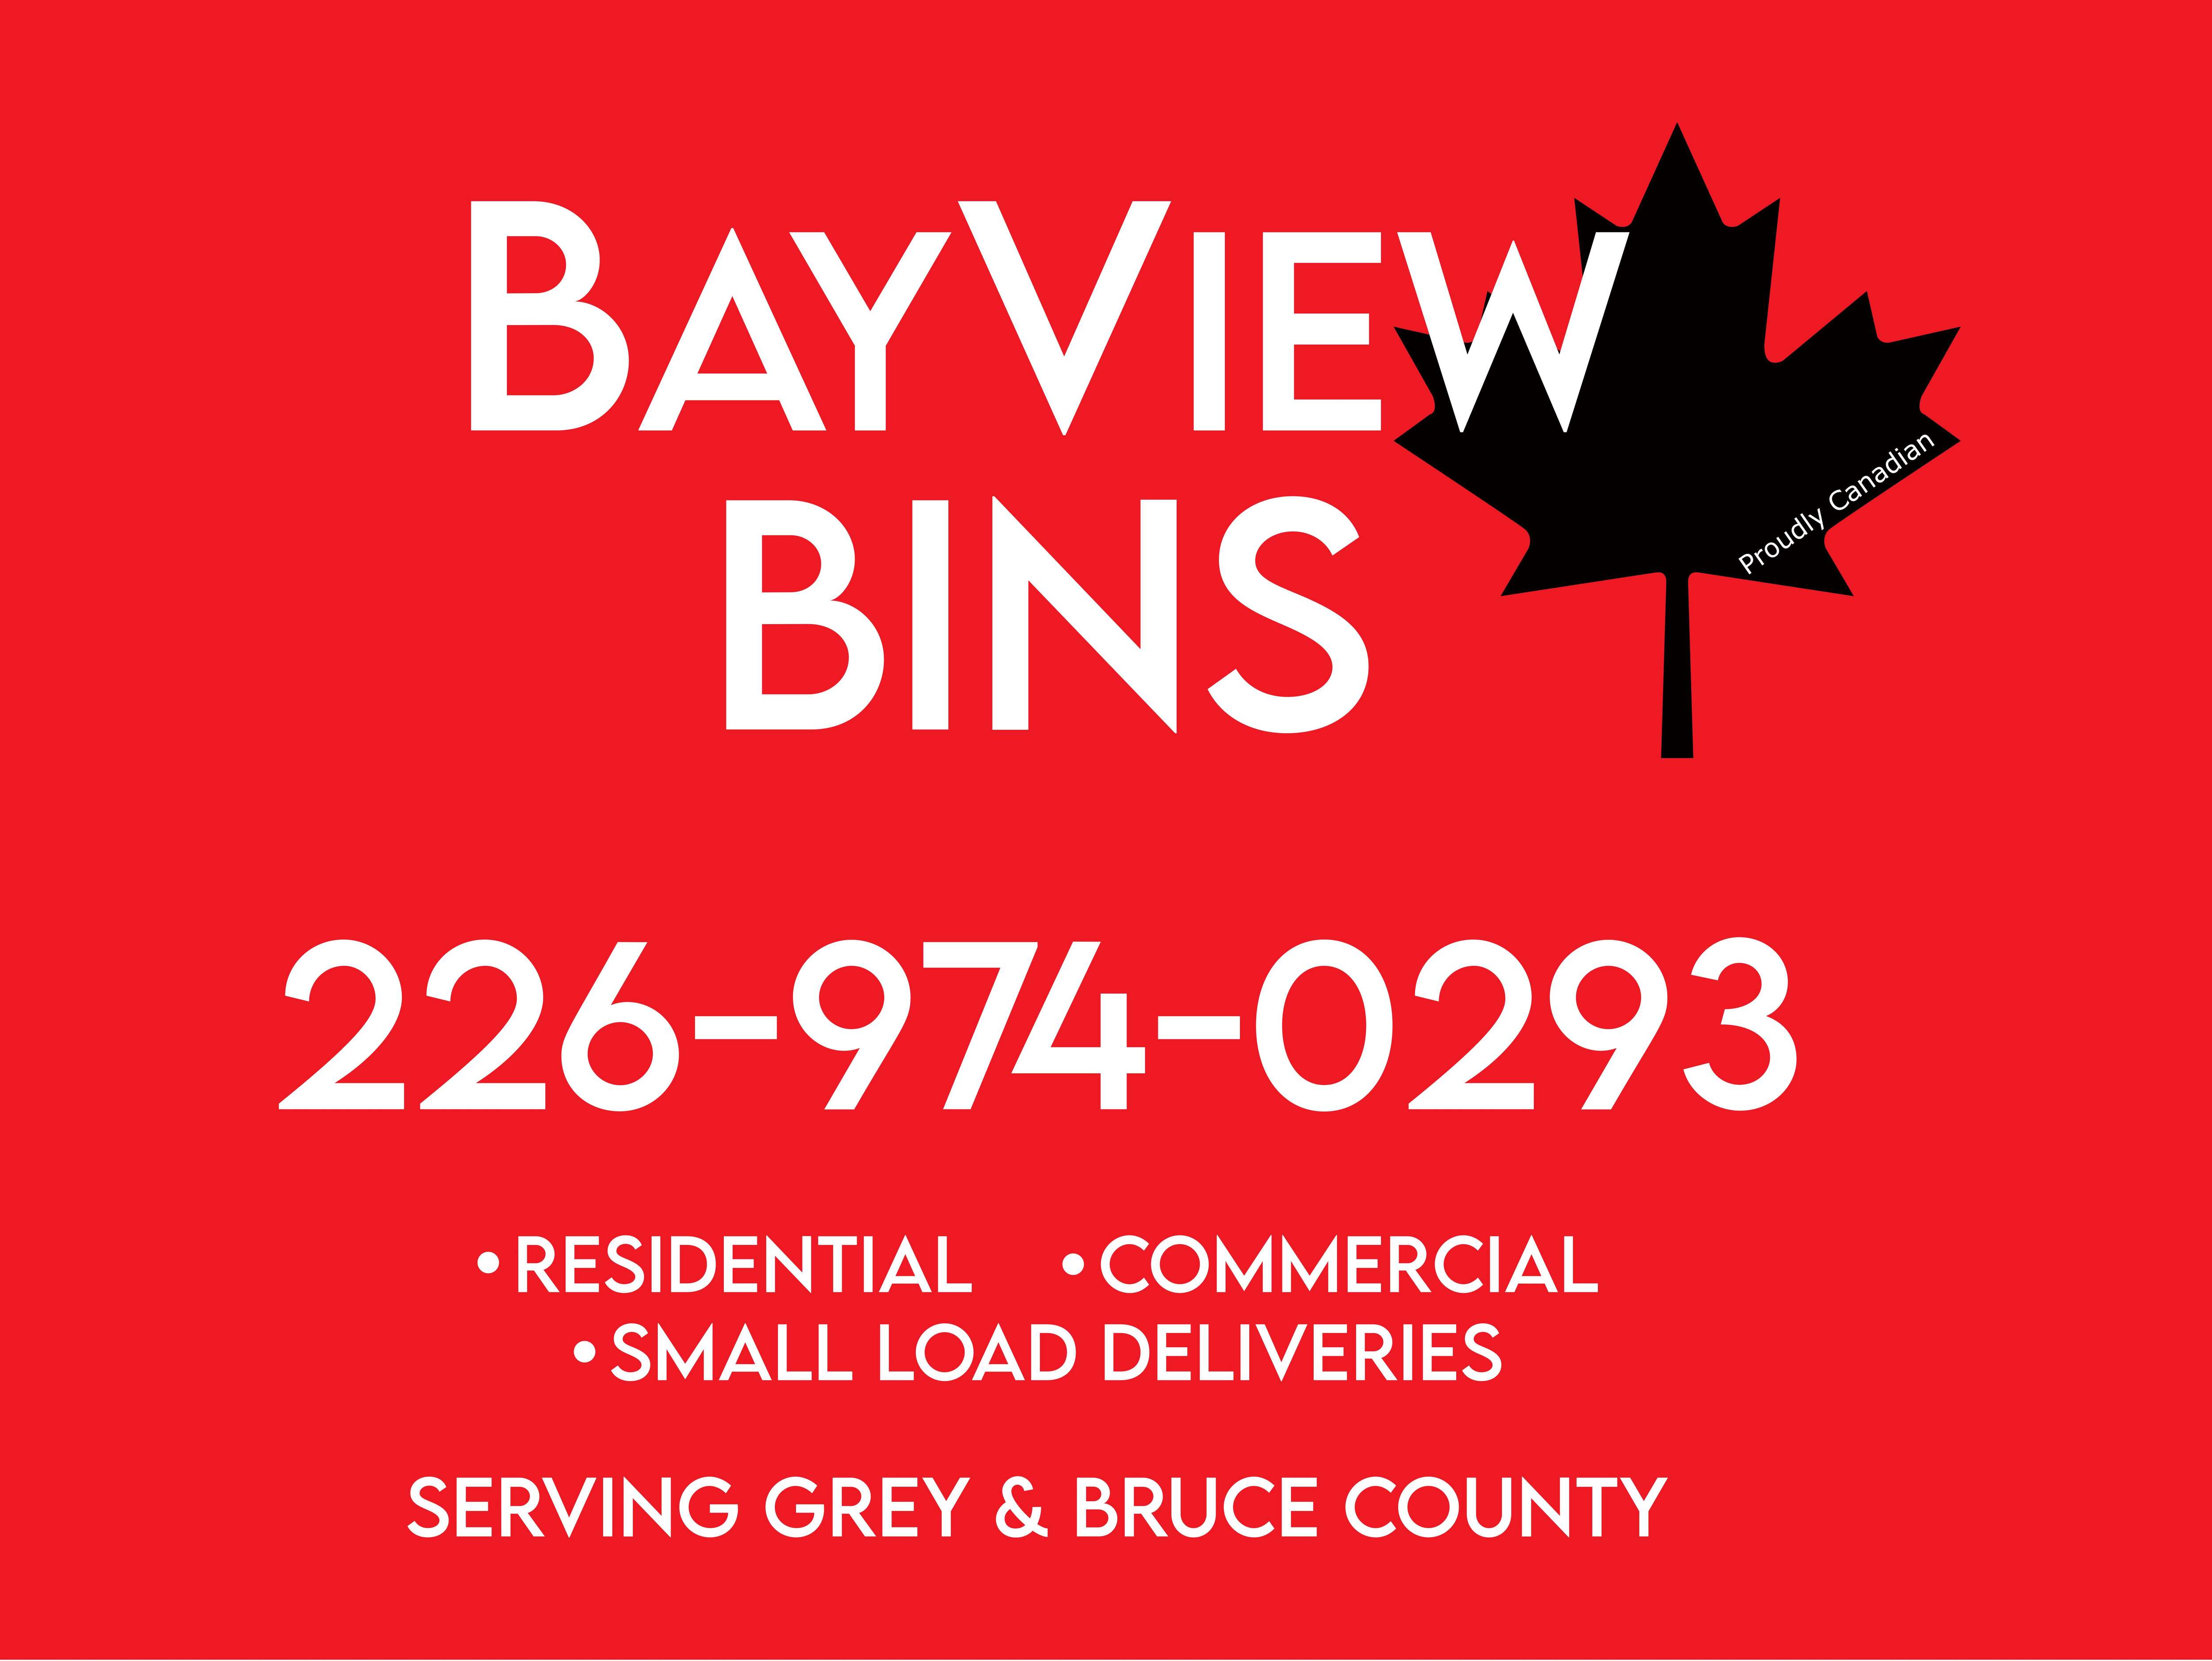 Bayview Bins